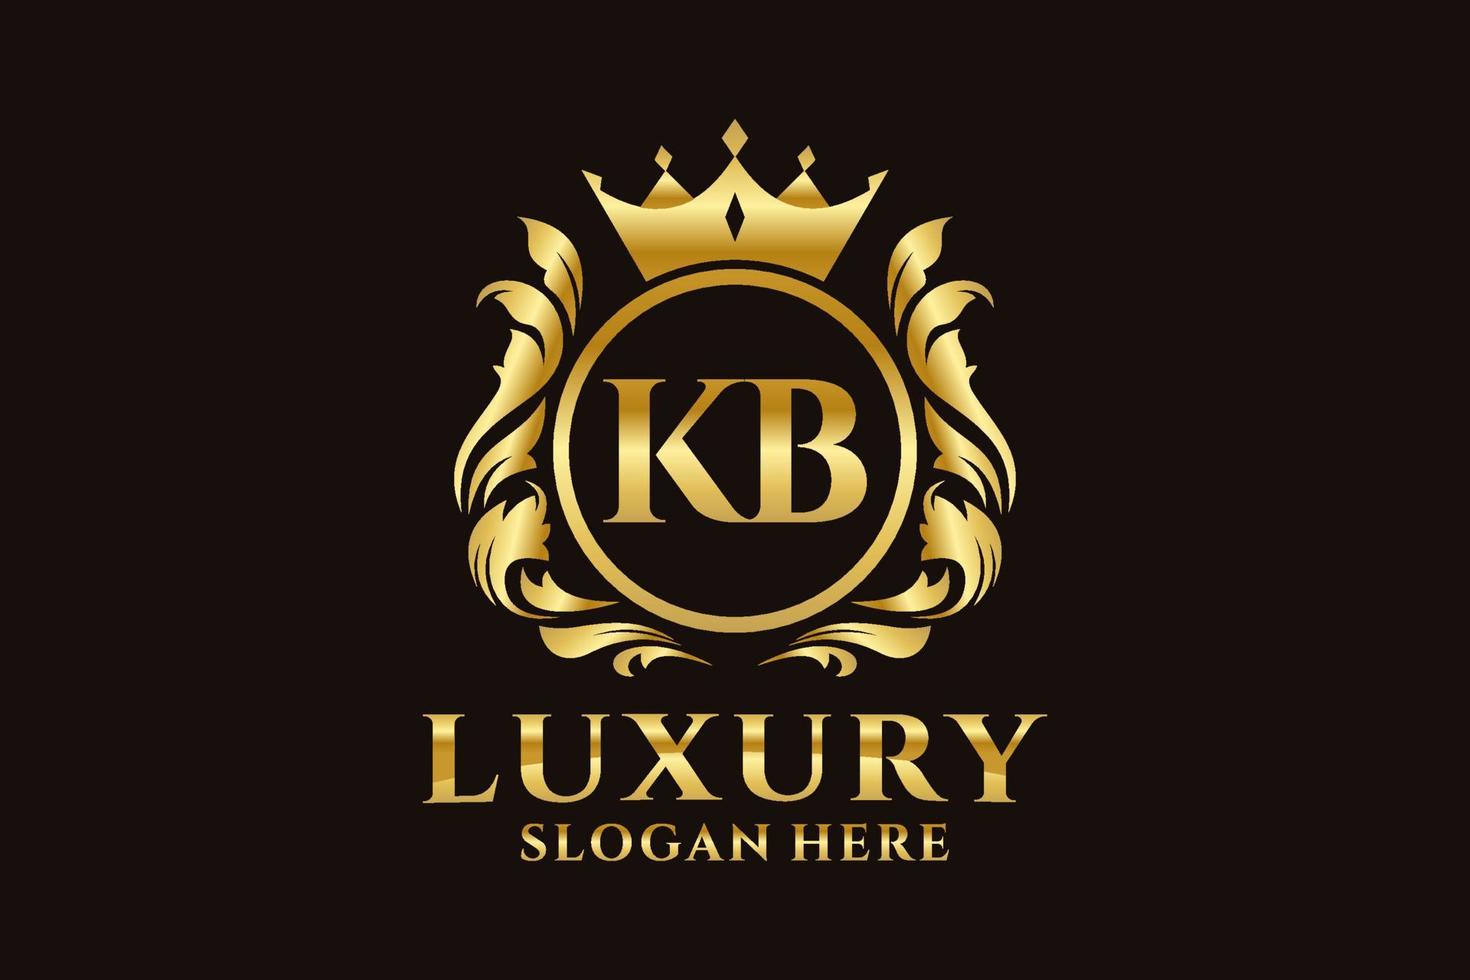 modèle initial de logo de luxe royal de lettre kb dans l'art vectoriel pour des projets de marque luxueux et d'autres illustrations vectorielles.